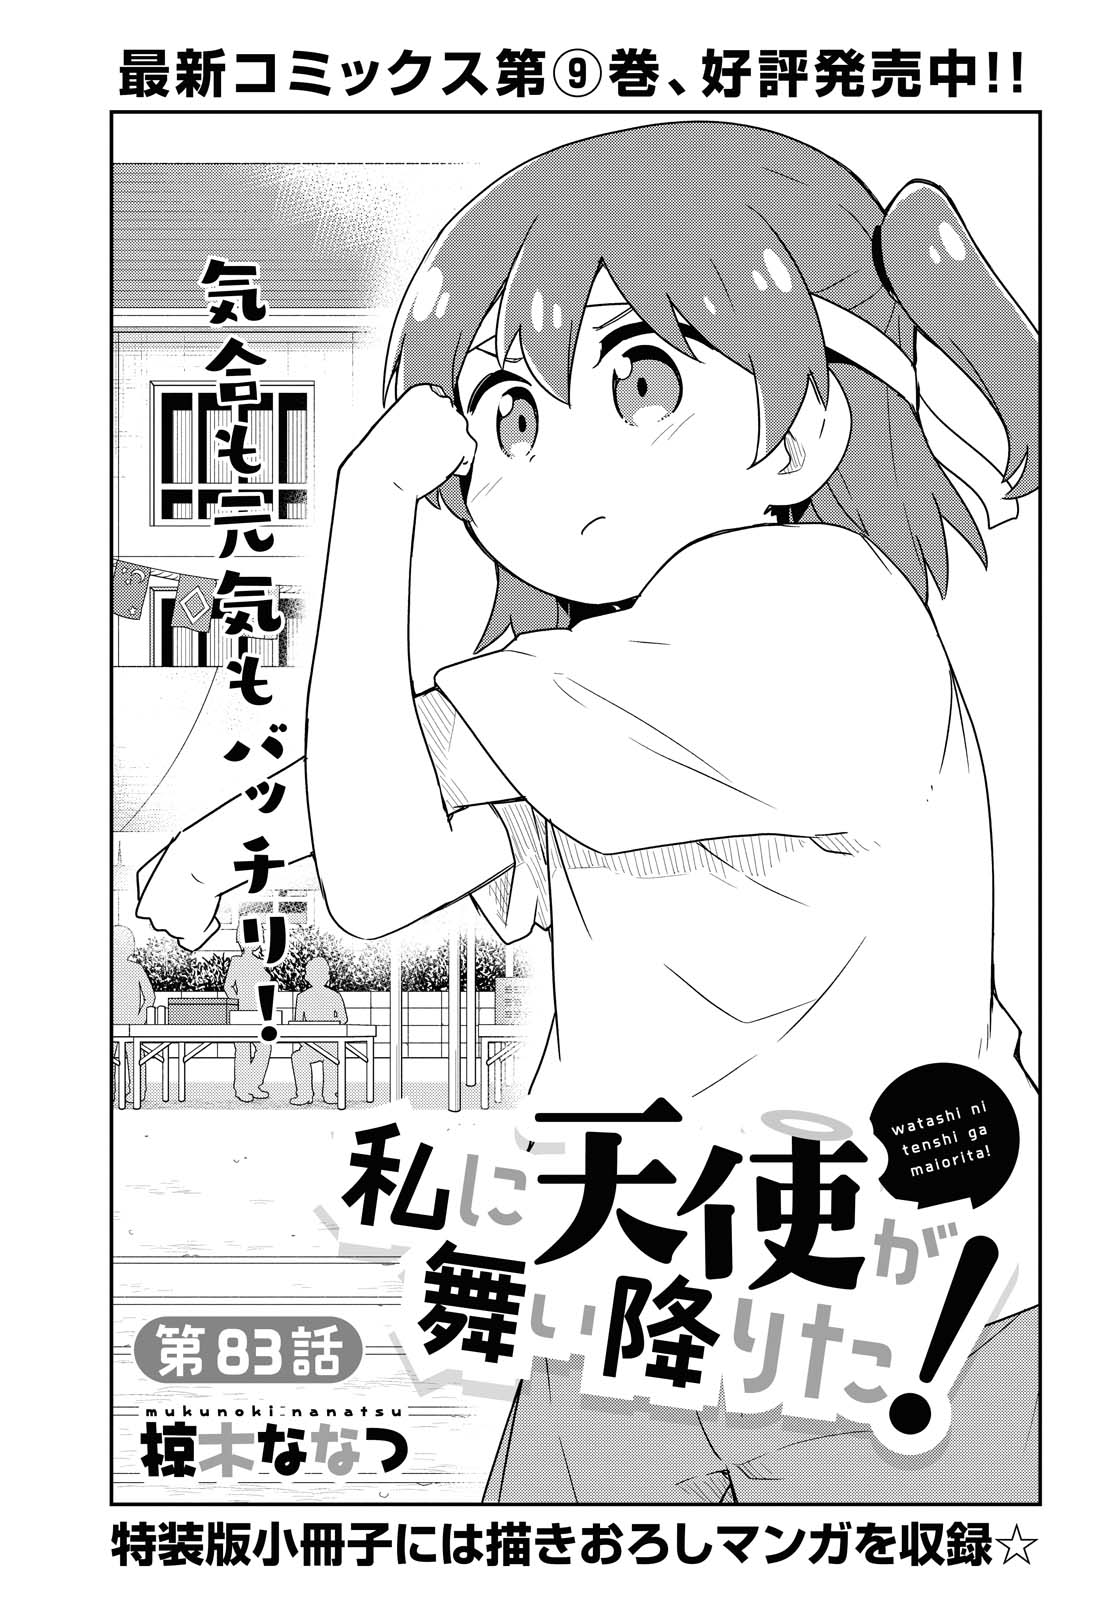 Watashi ni Tenshi ga Maiorita! - Chapter 83 - Page 2